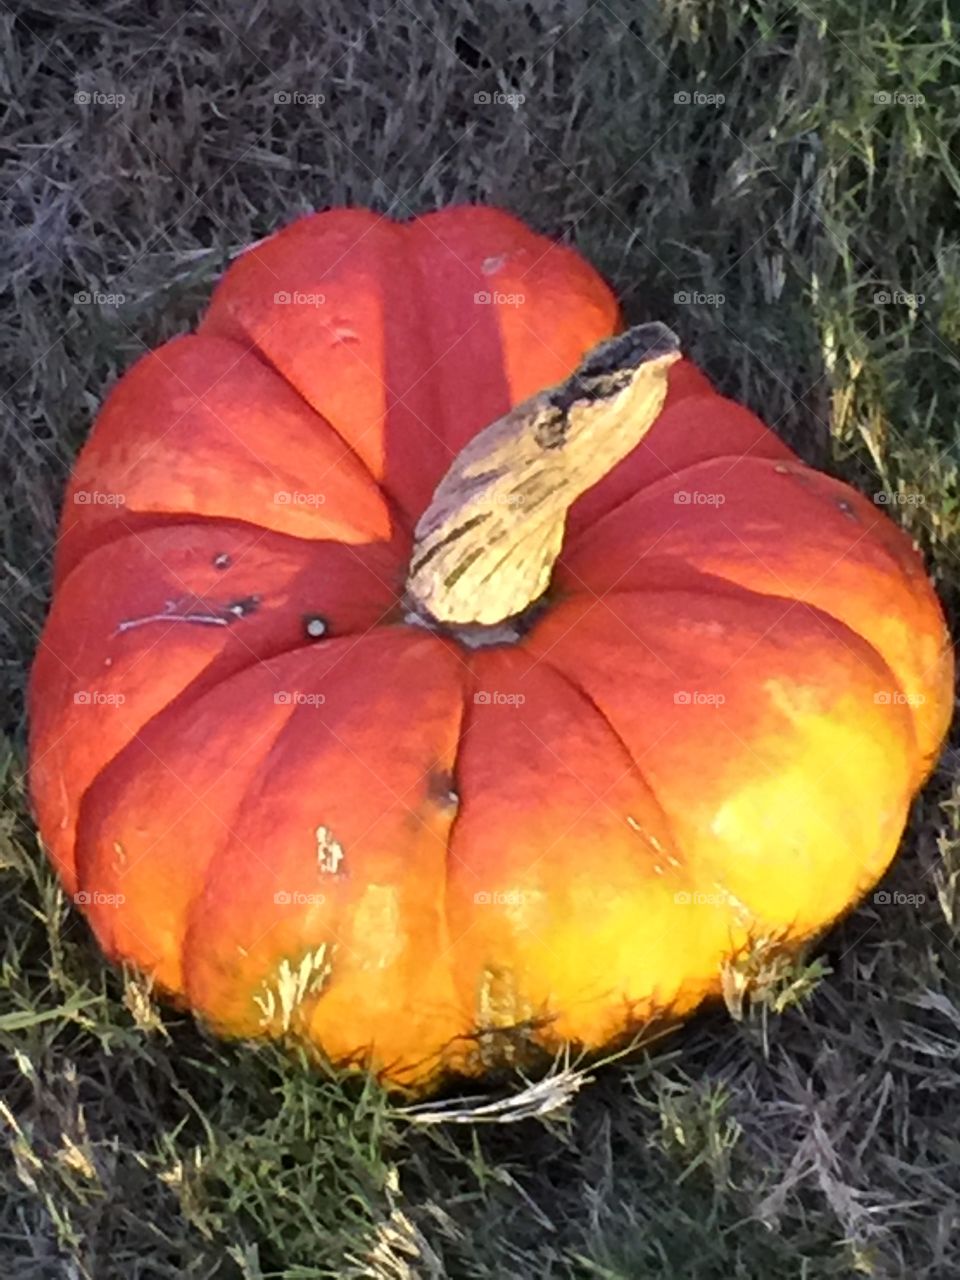 Ombré pumpkin